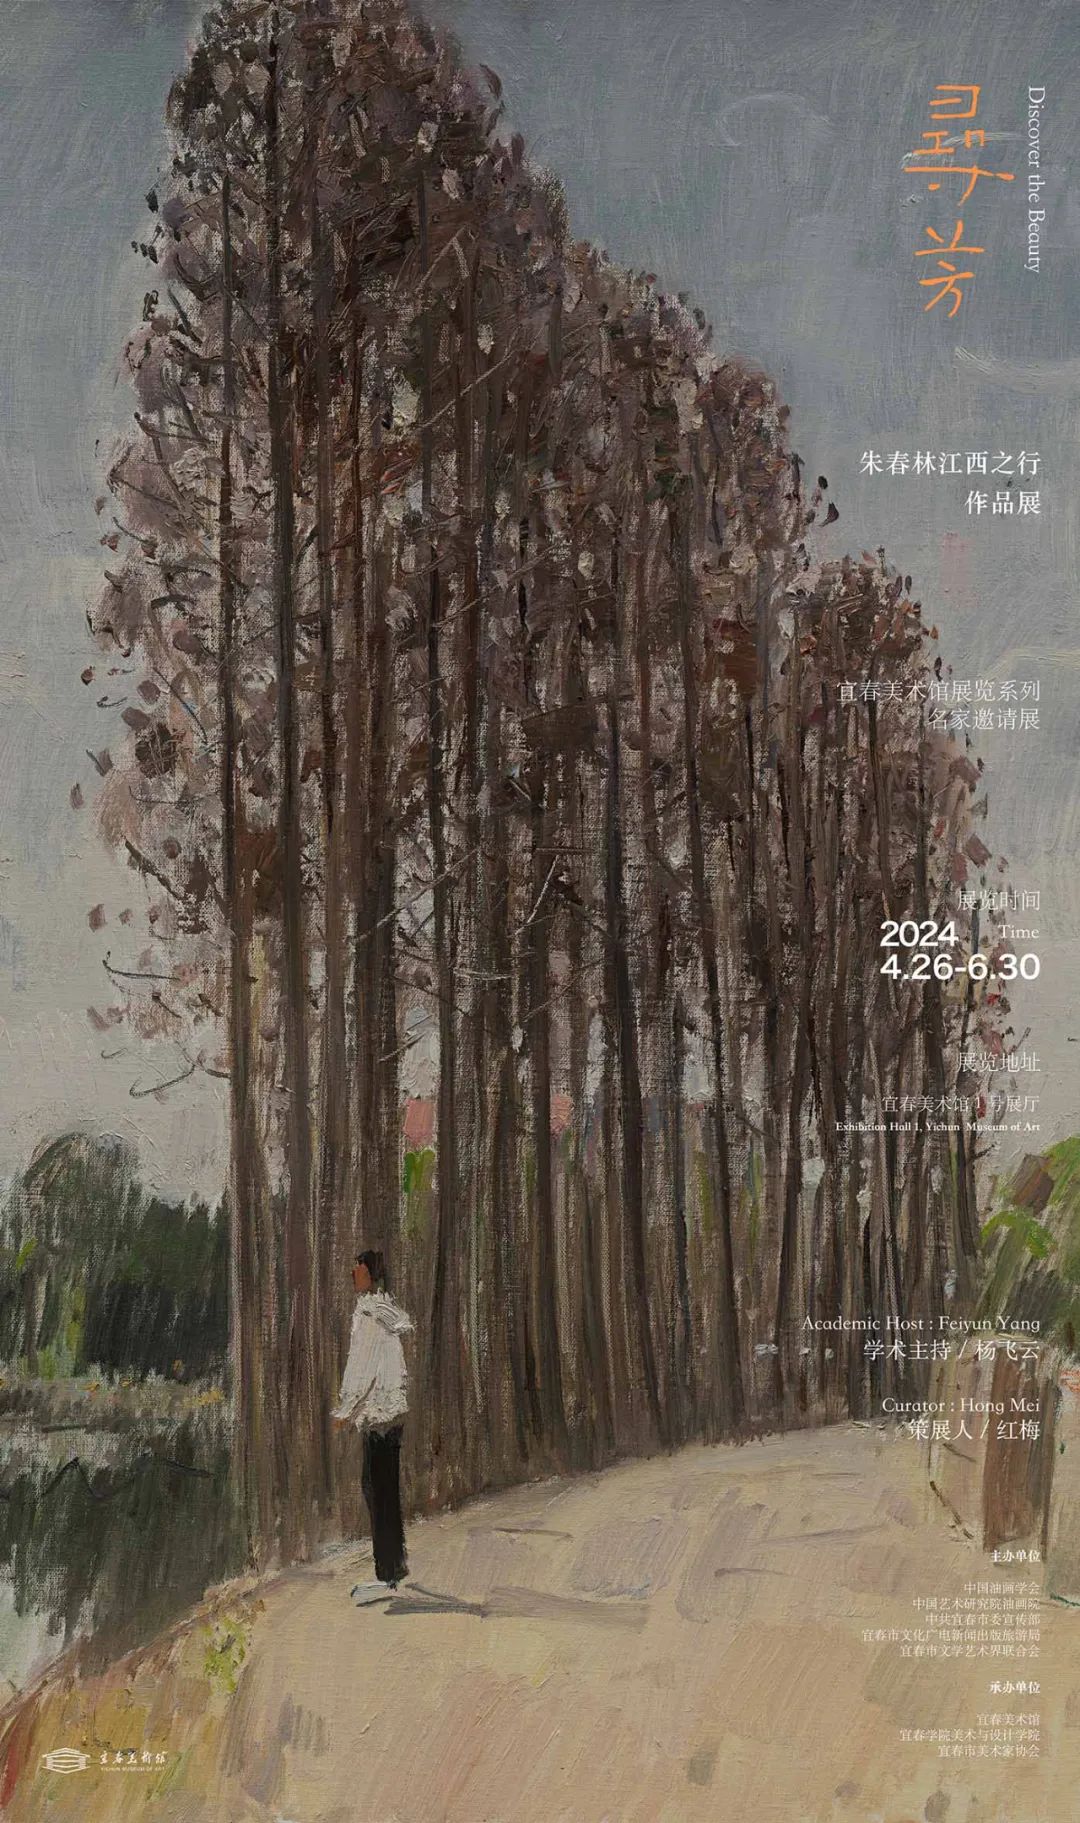 “寻芳——朱春林江西之行作品展”将于4月26日在江西宜春开幕